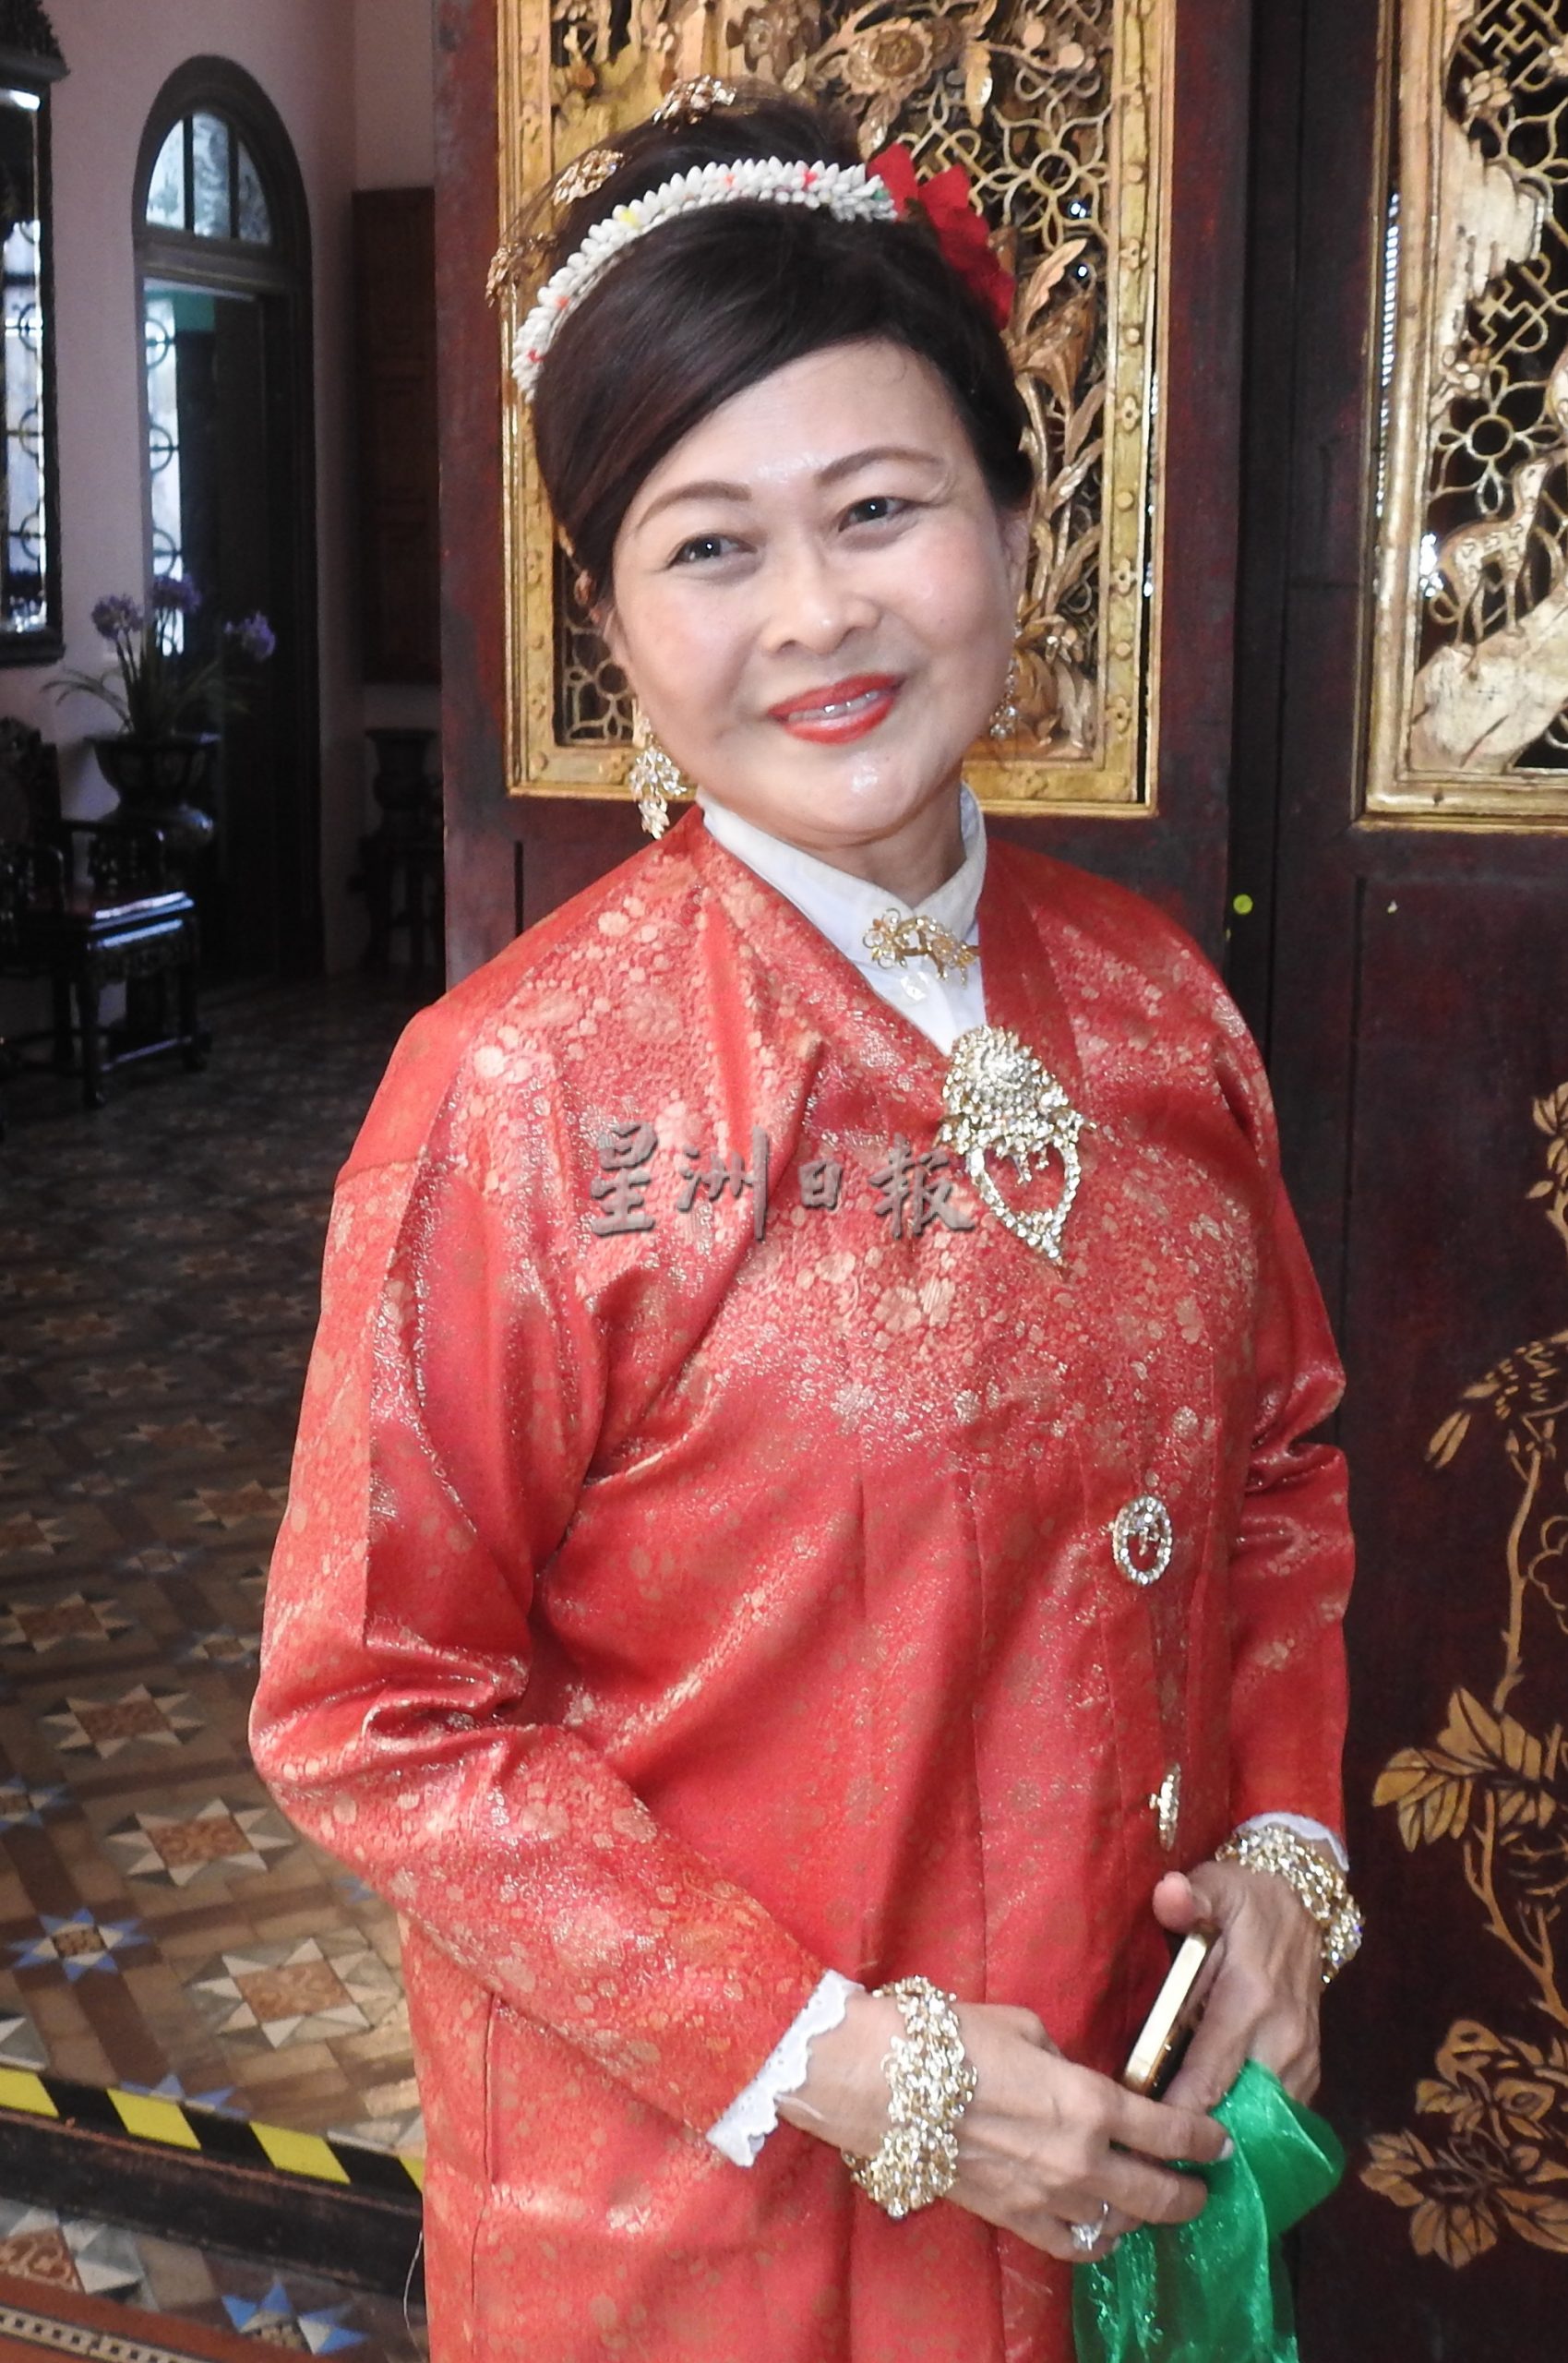 娘惹峇峇传统绣花服饰“可芭雅”将申请名列联合国世界非物资文化遗产名录